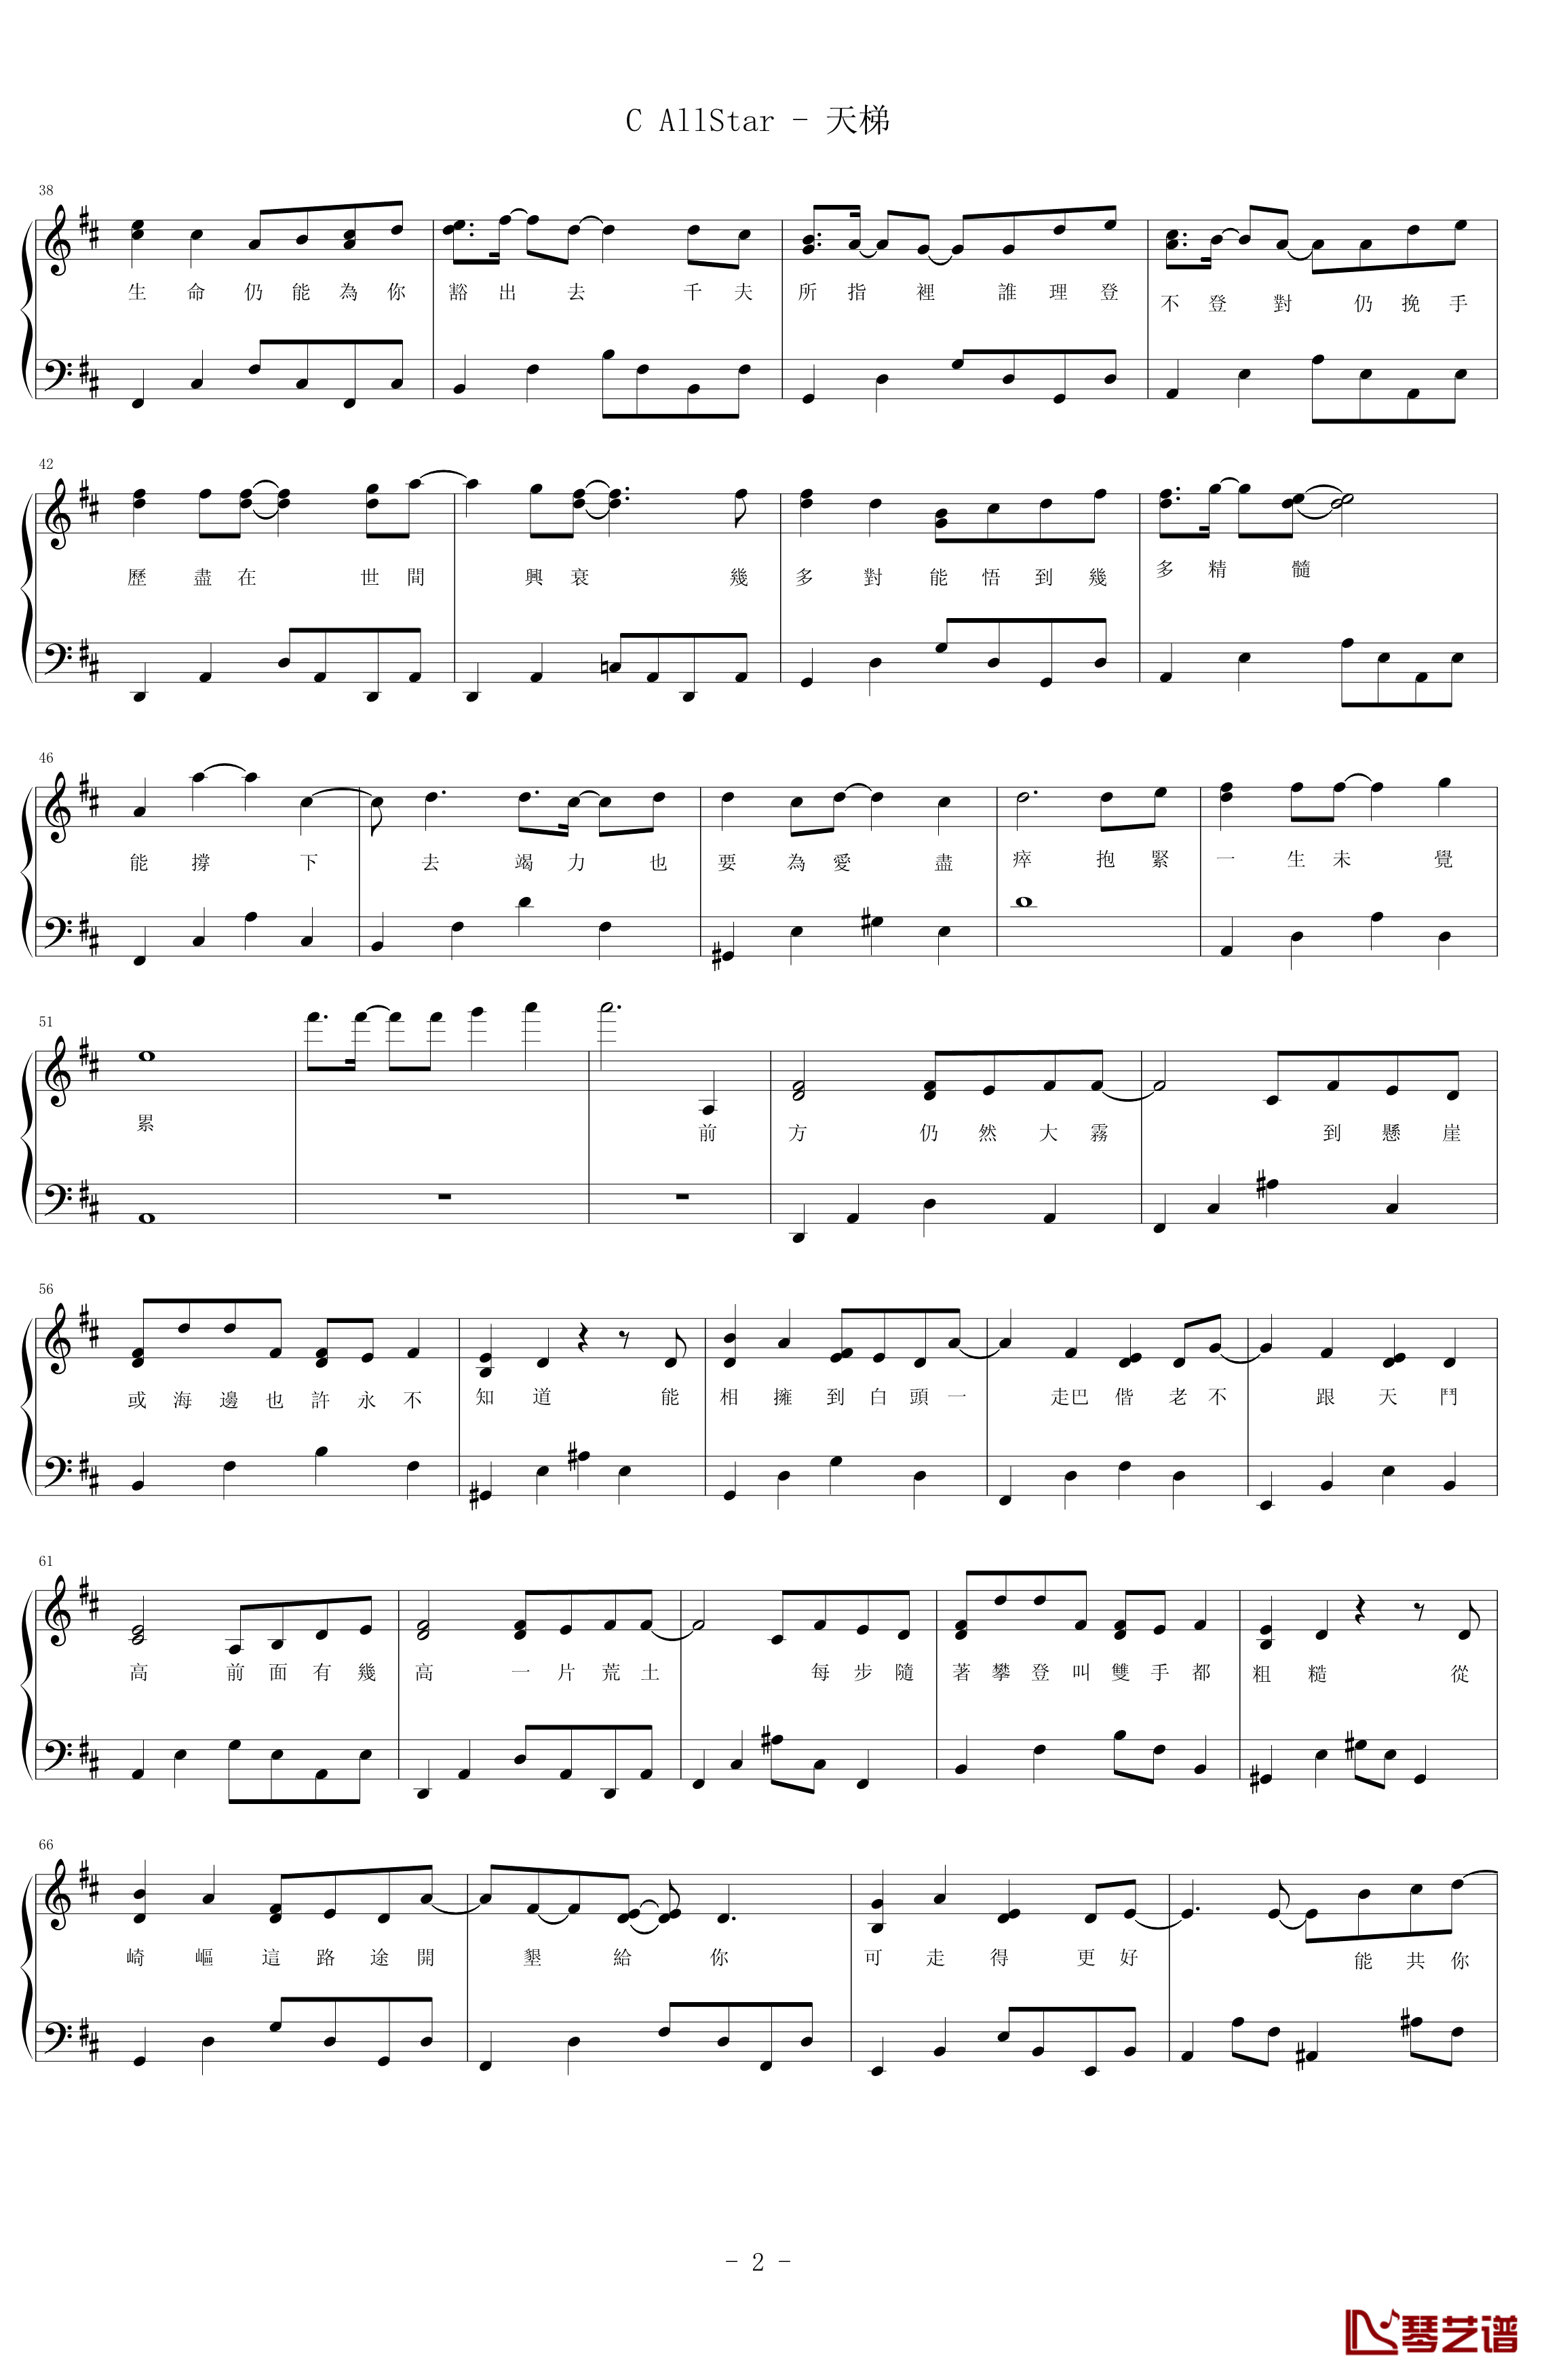 天梯钢琴谱-简易版-C AllStar2